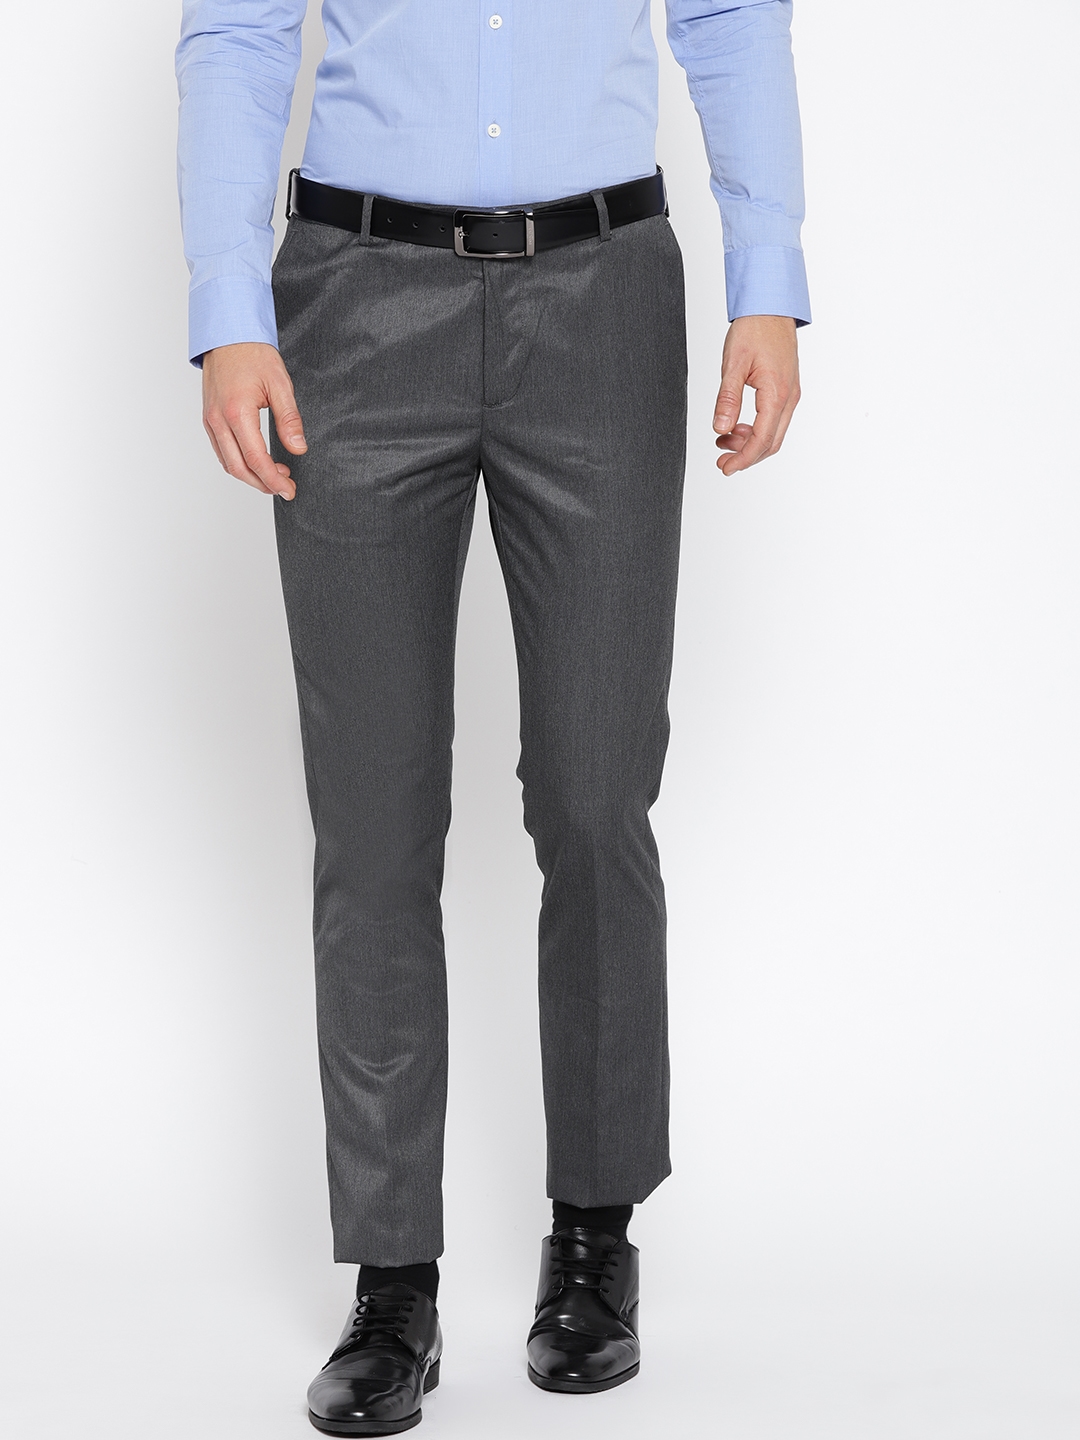 Buy Khaki Trousers  Pants for Men by Arrow Sports Online  Ajiocom